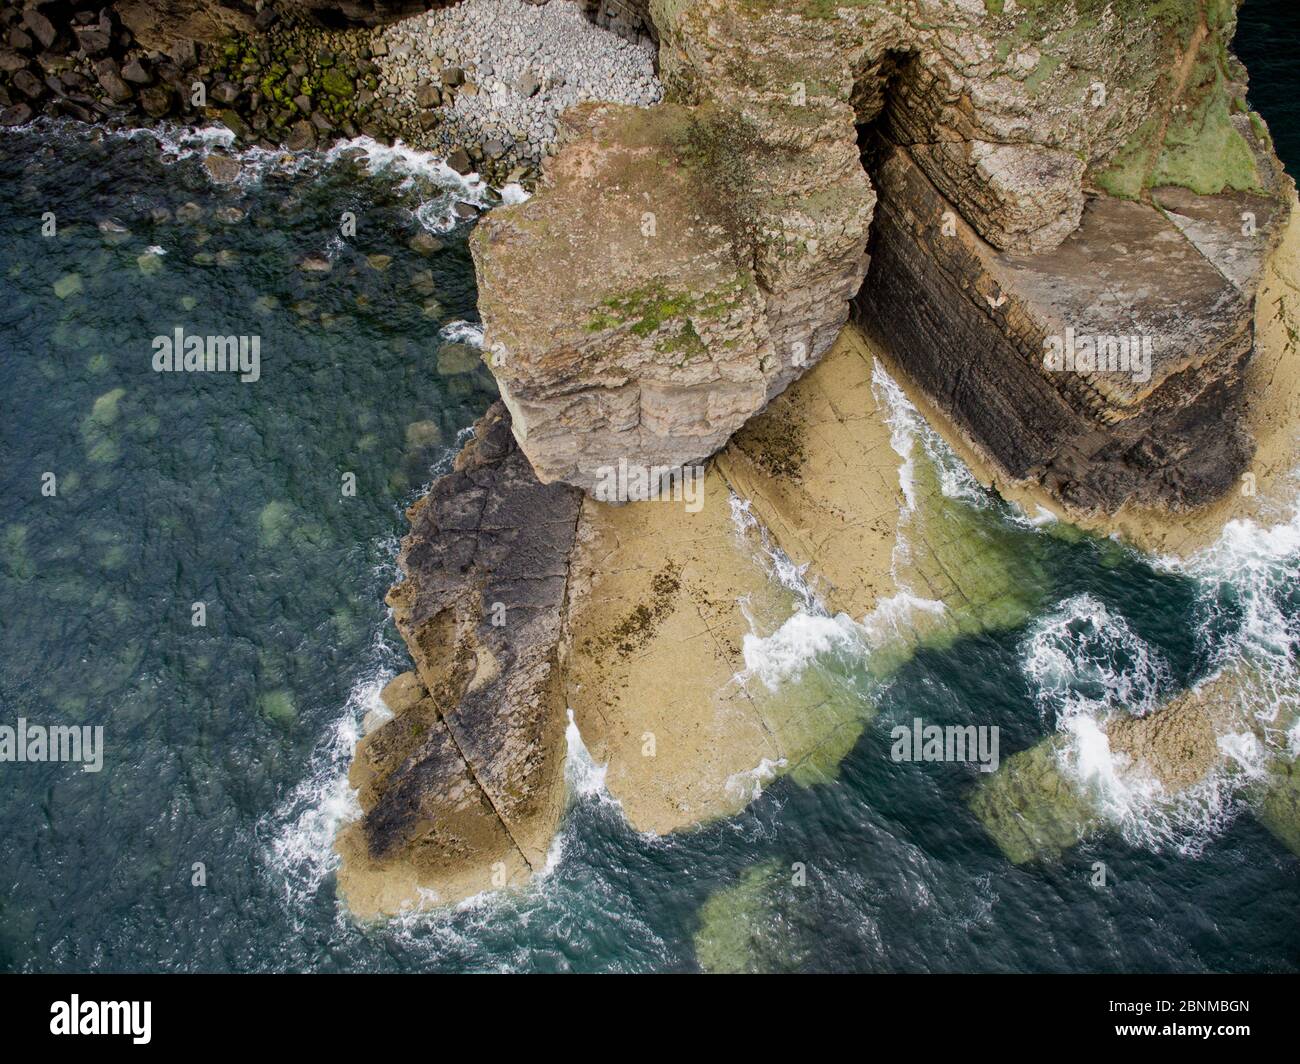 Vista aérea de plataforma de corte de olas en rocas sedimentarias de edad Ordovicia en Trwyn Wylfa, Abersoch, Gales, Reino Unido. Las olas han explotado un fuerte lecho Foto de stock